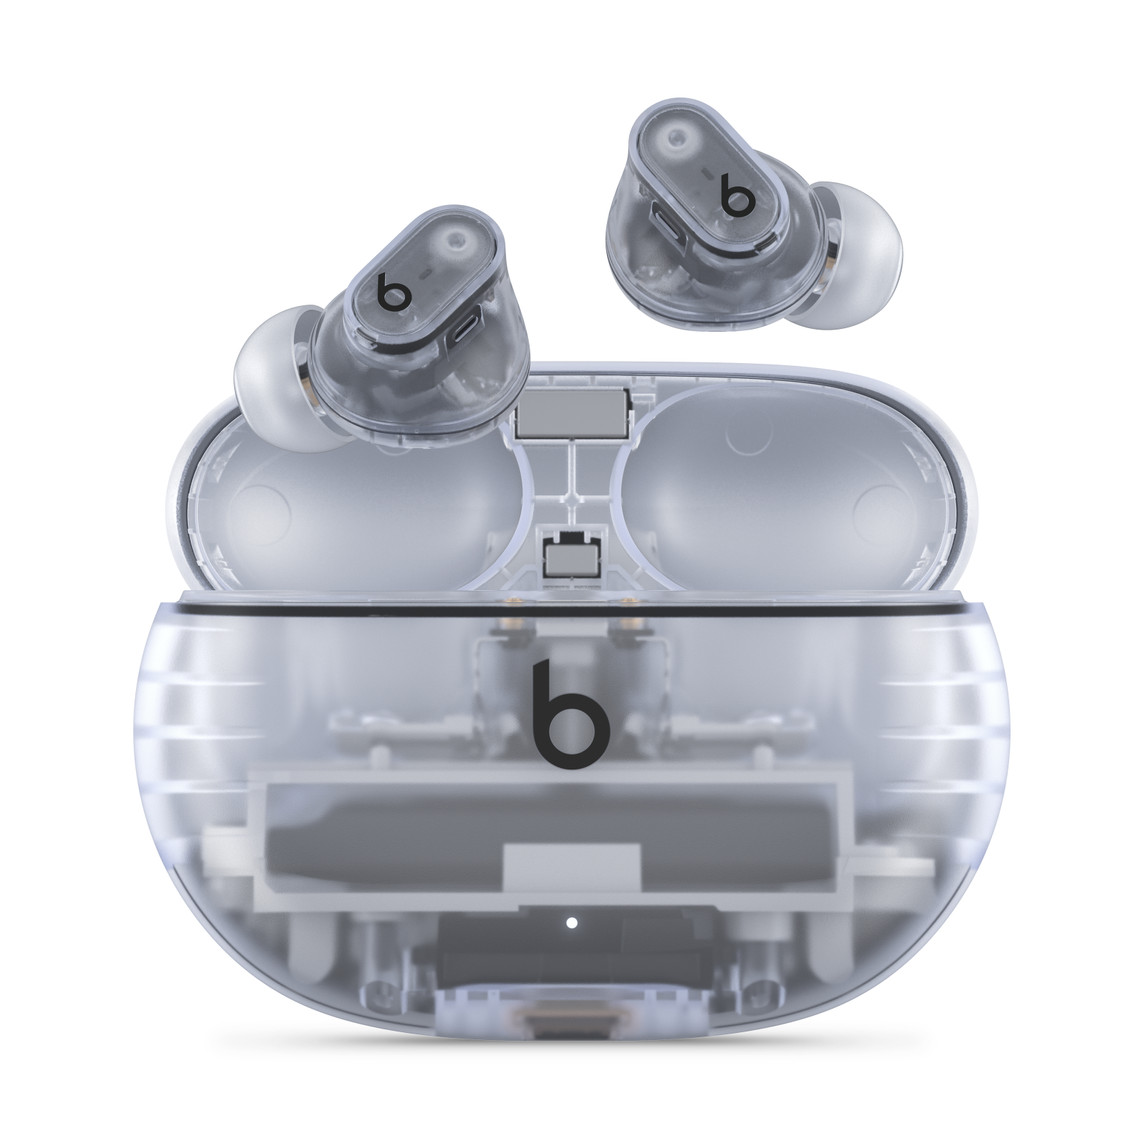 Gjennomsiktige Beats Studio Buds + trådløse, støyreduserende øretelefoner med Beats-logoen over et hendig ladeetui.